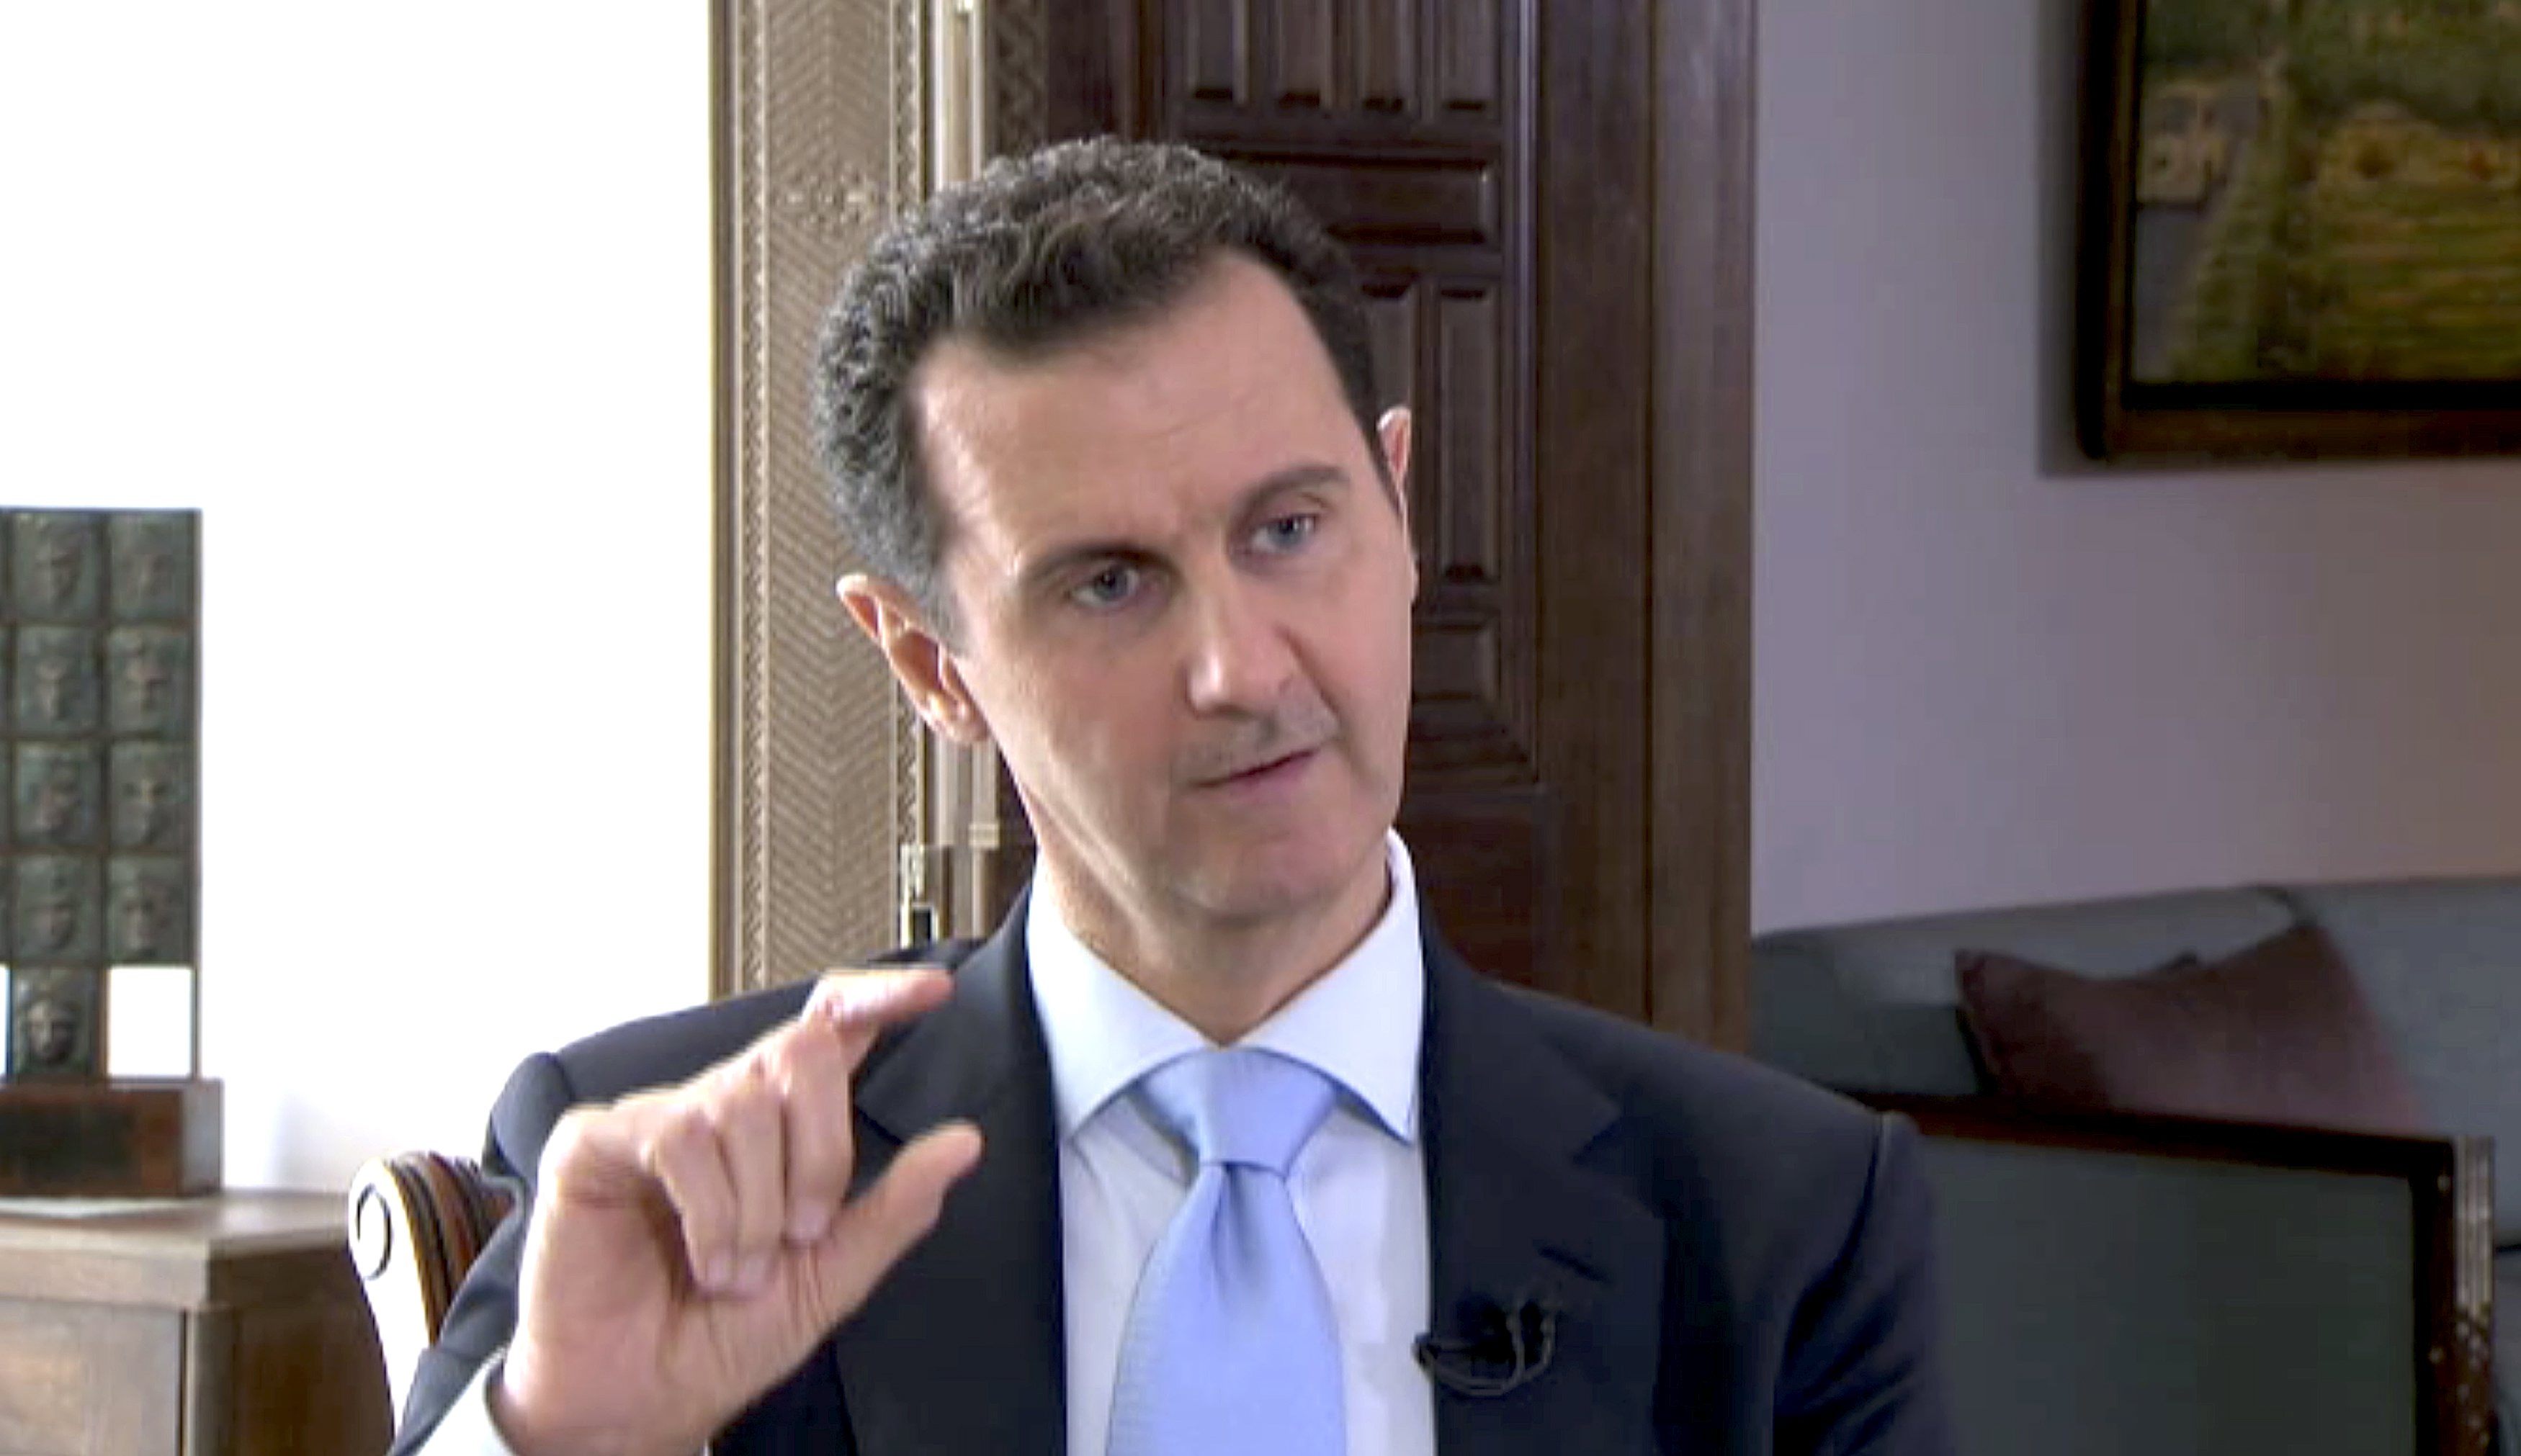 El presidente sirio, Bashar Al Assad dejó claro que negociará pero no con terroristas.